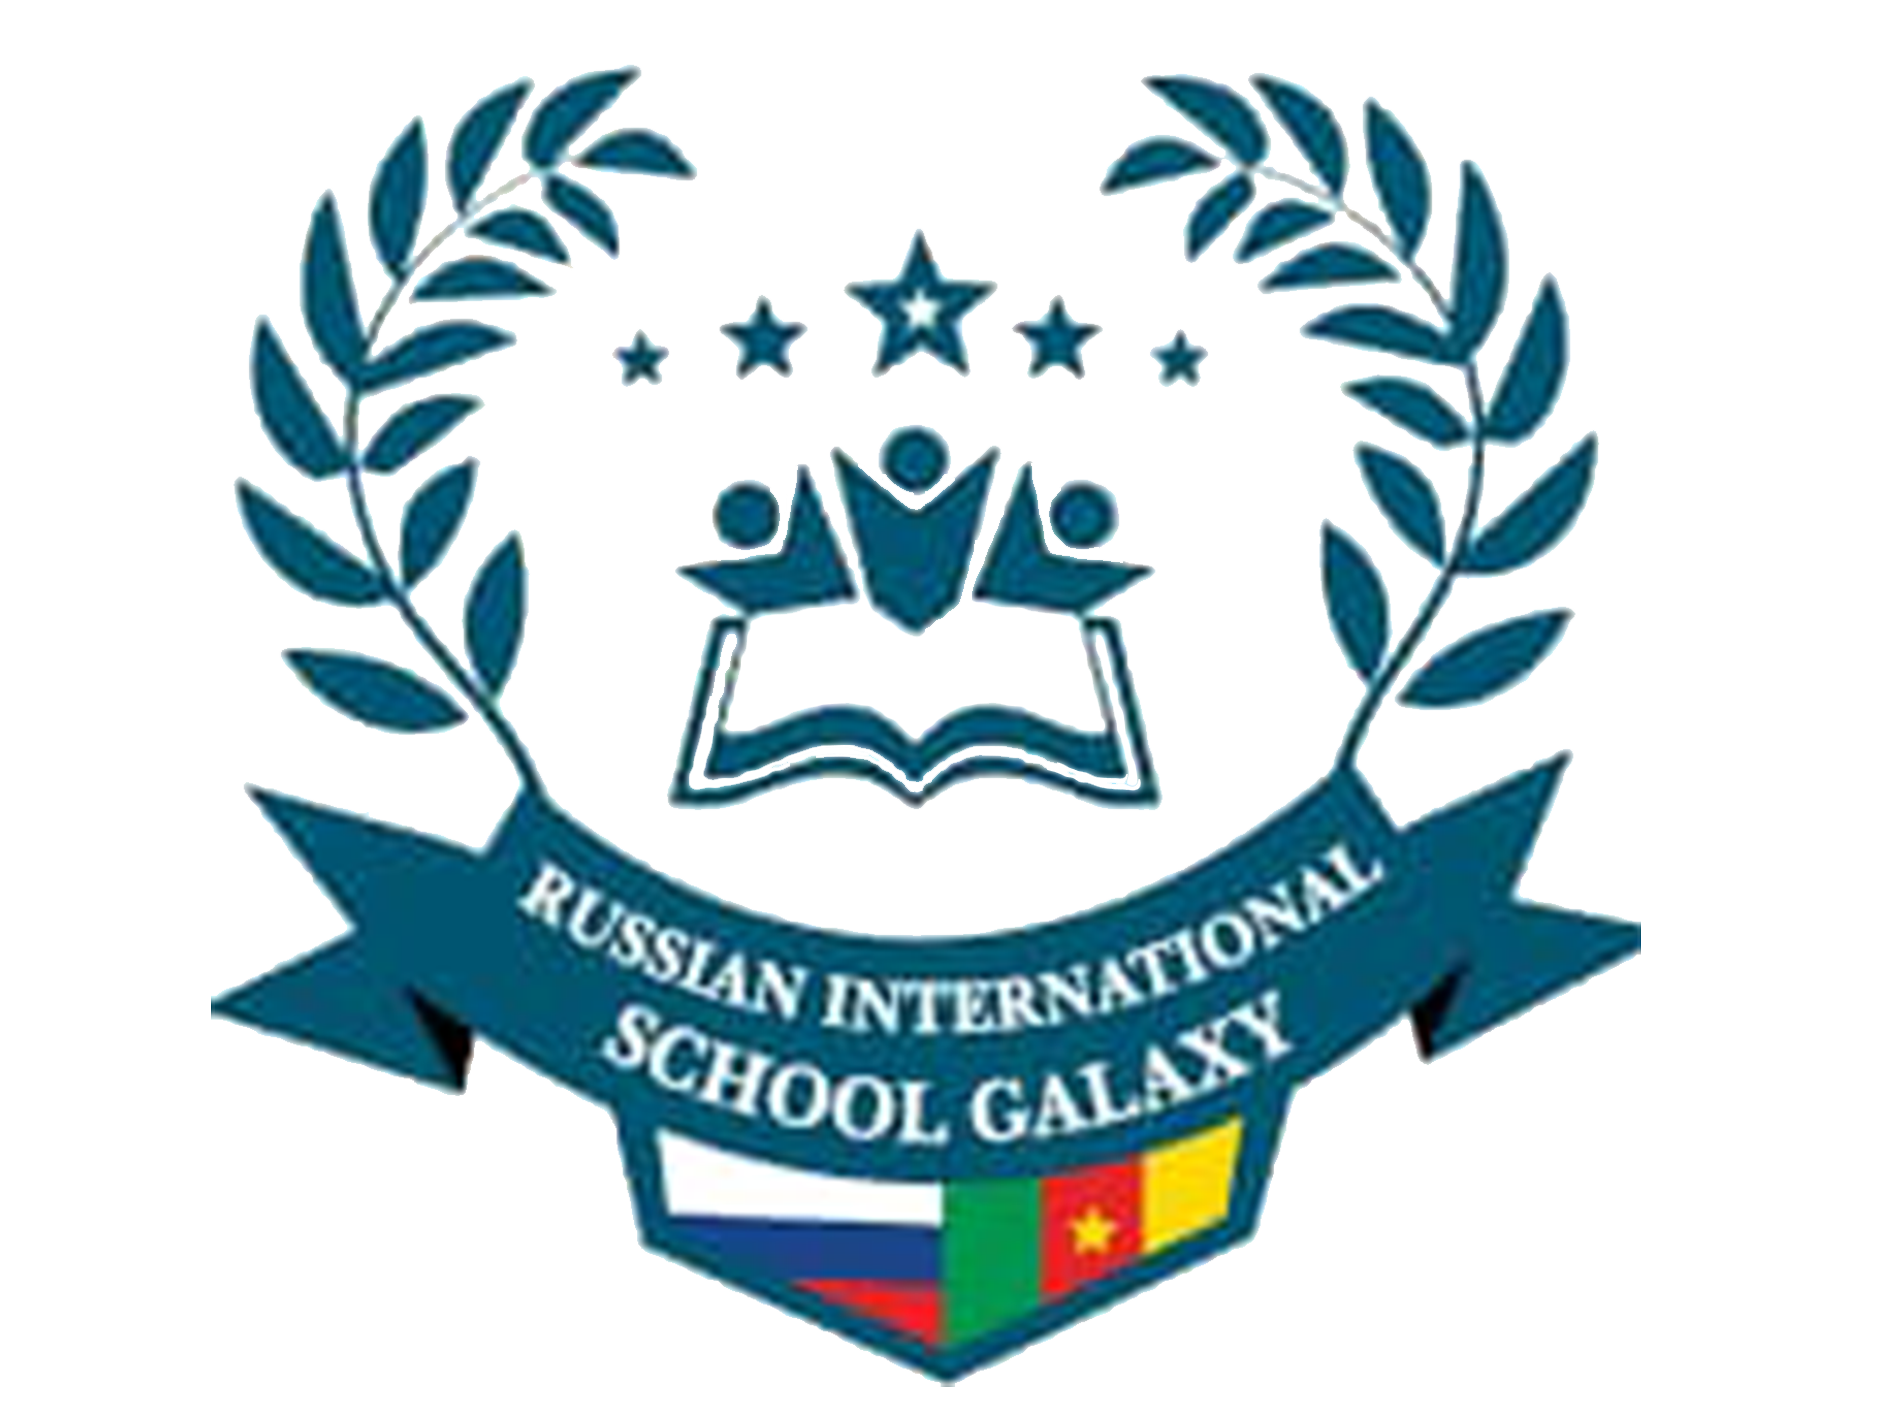 RUSSIAN INTERNATIONAL SCHOOL “GALAXY”.